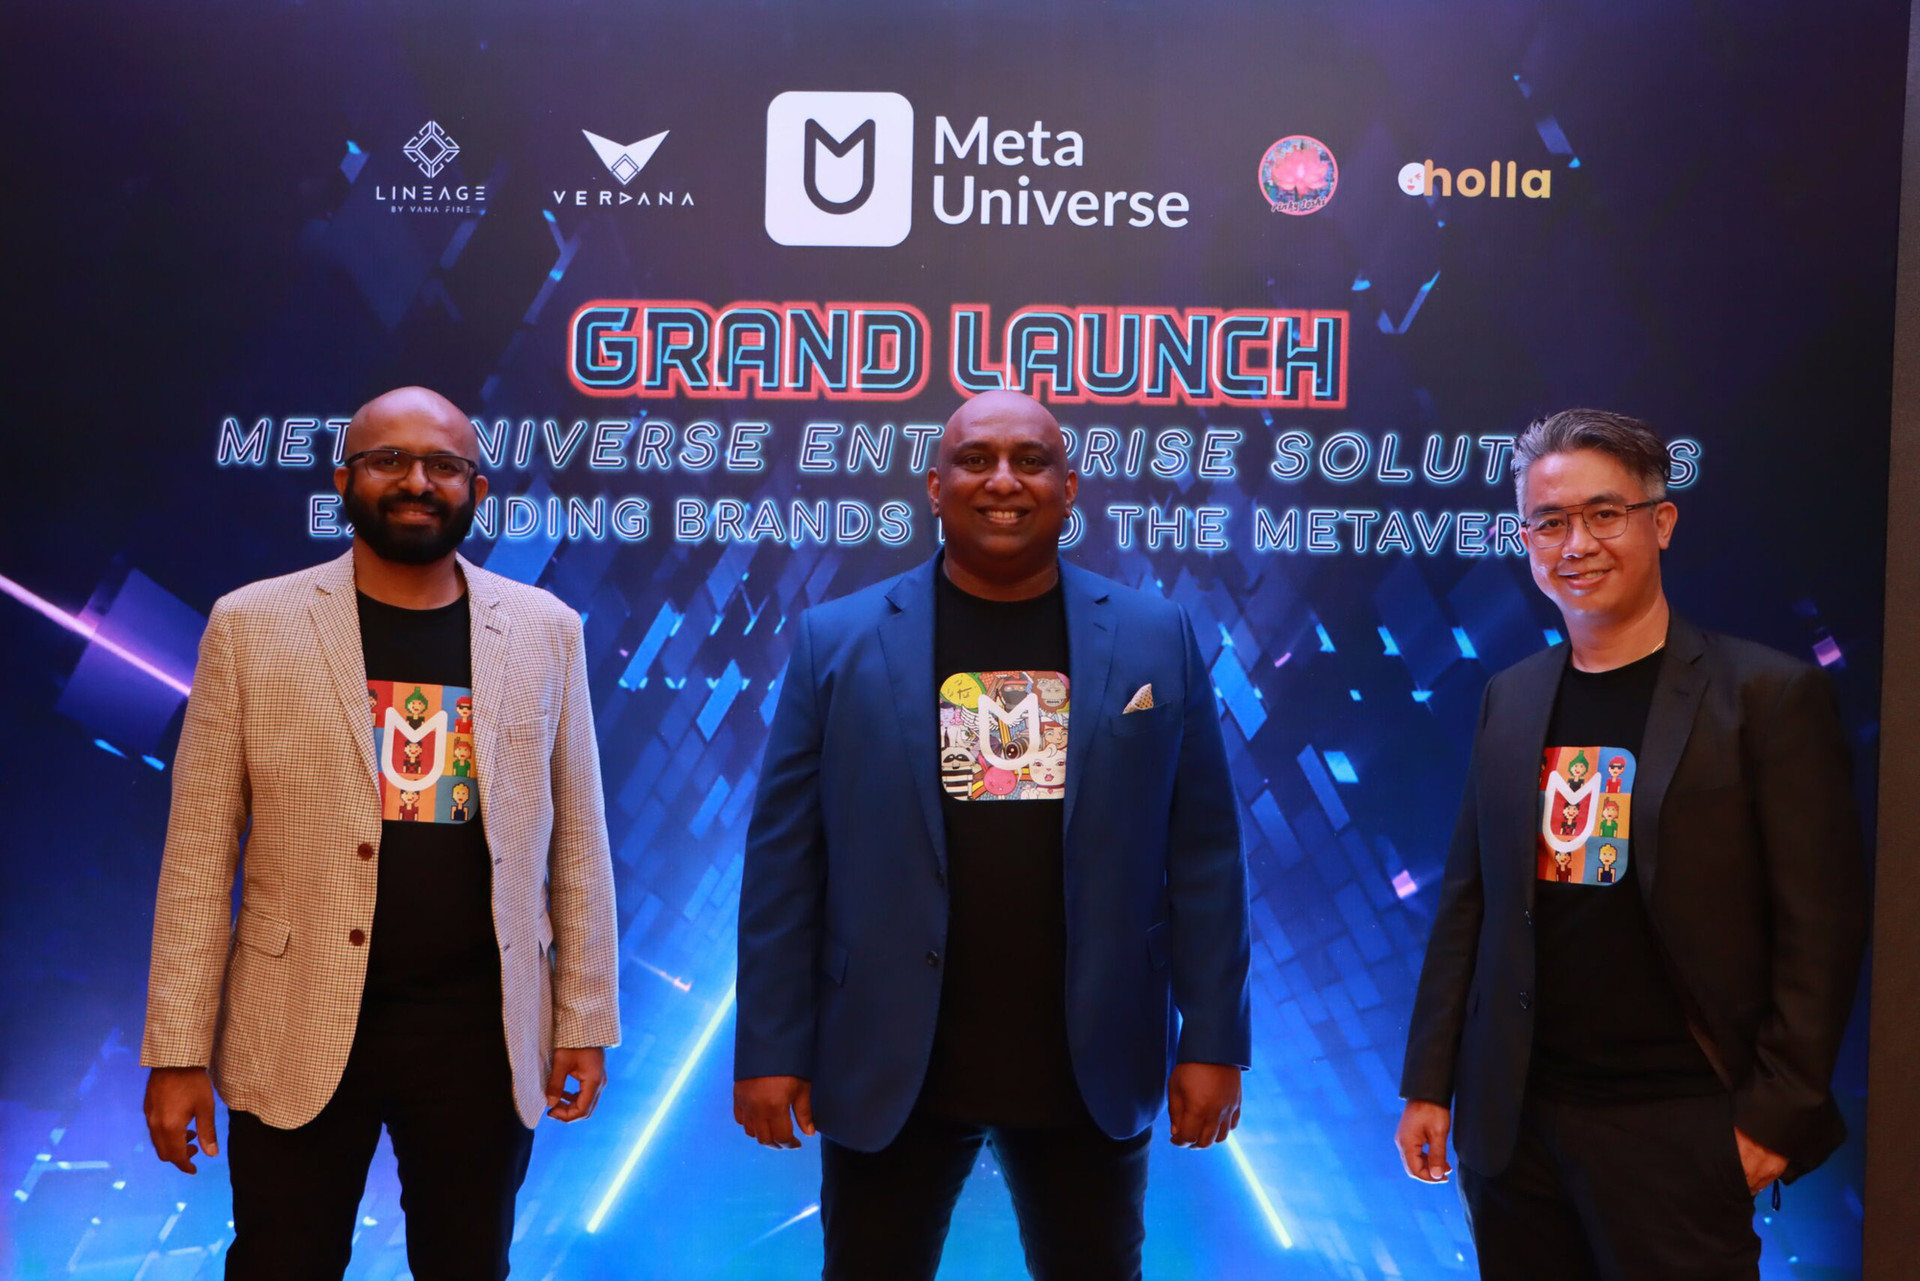 Meta Universe tại Malaysia sẽ cung cấp nền tảng metaverse cho doanh nghiệp - Ảnh 1.